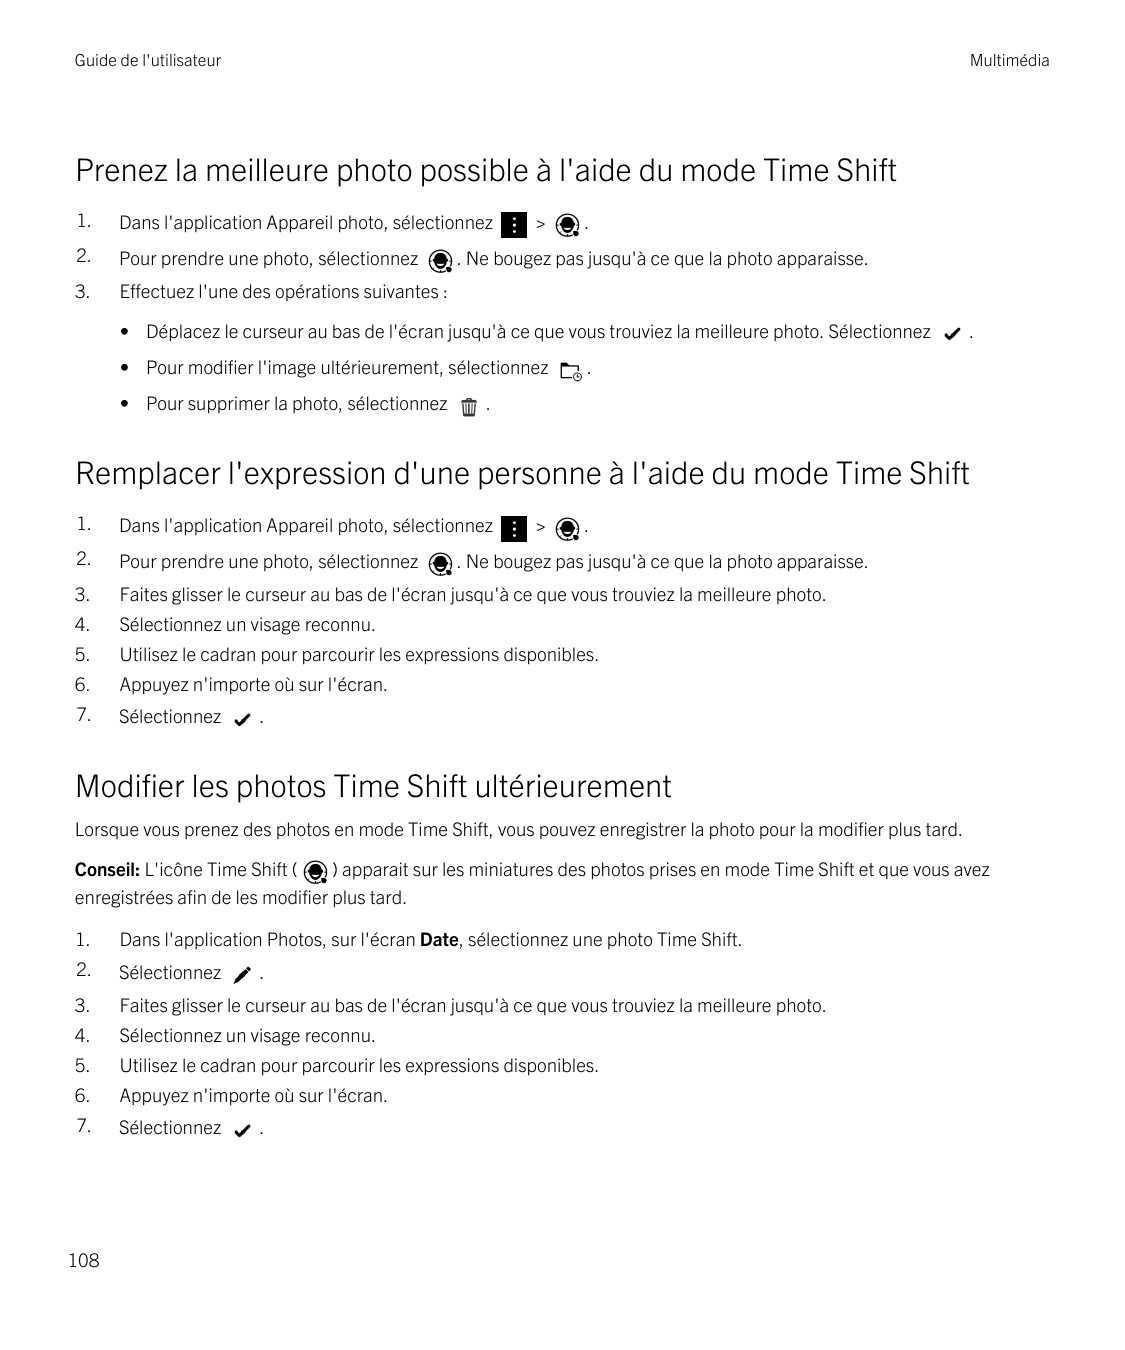 Guide de l'utilisateurMultimédiaPrenez la meilleure photo possible à l'aide du mode Time Shift1.Dans l'application Appareil phot